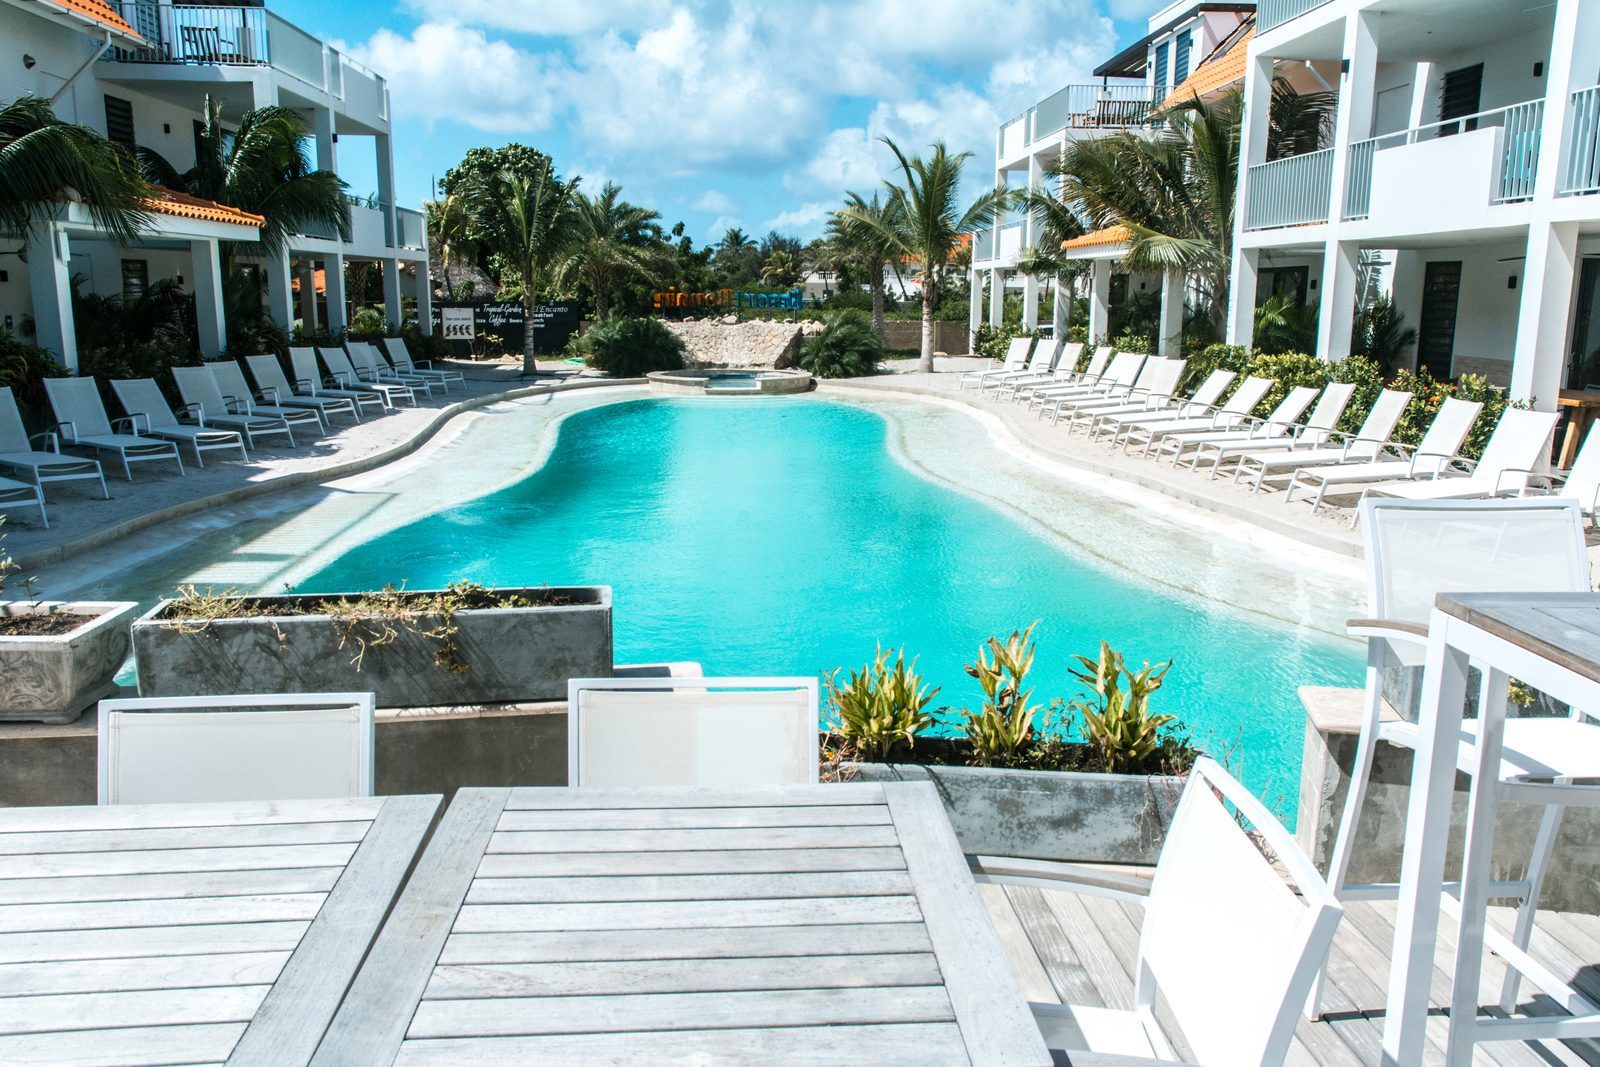 Das Resort Bonaire bietet verschiedene Terrassen, von denen aus Sie den Swimmingpool überblicken können.